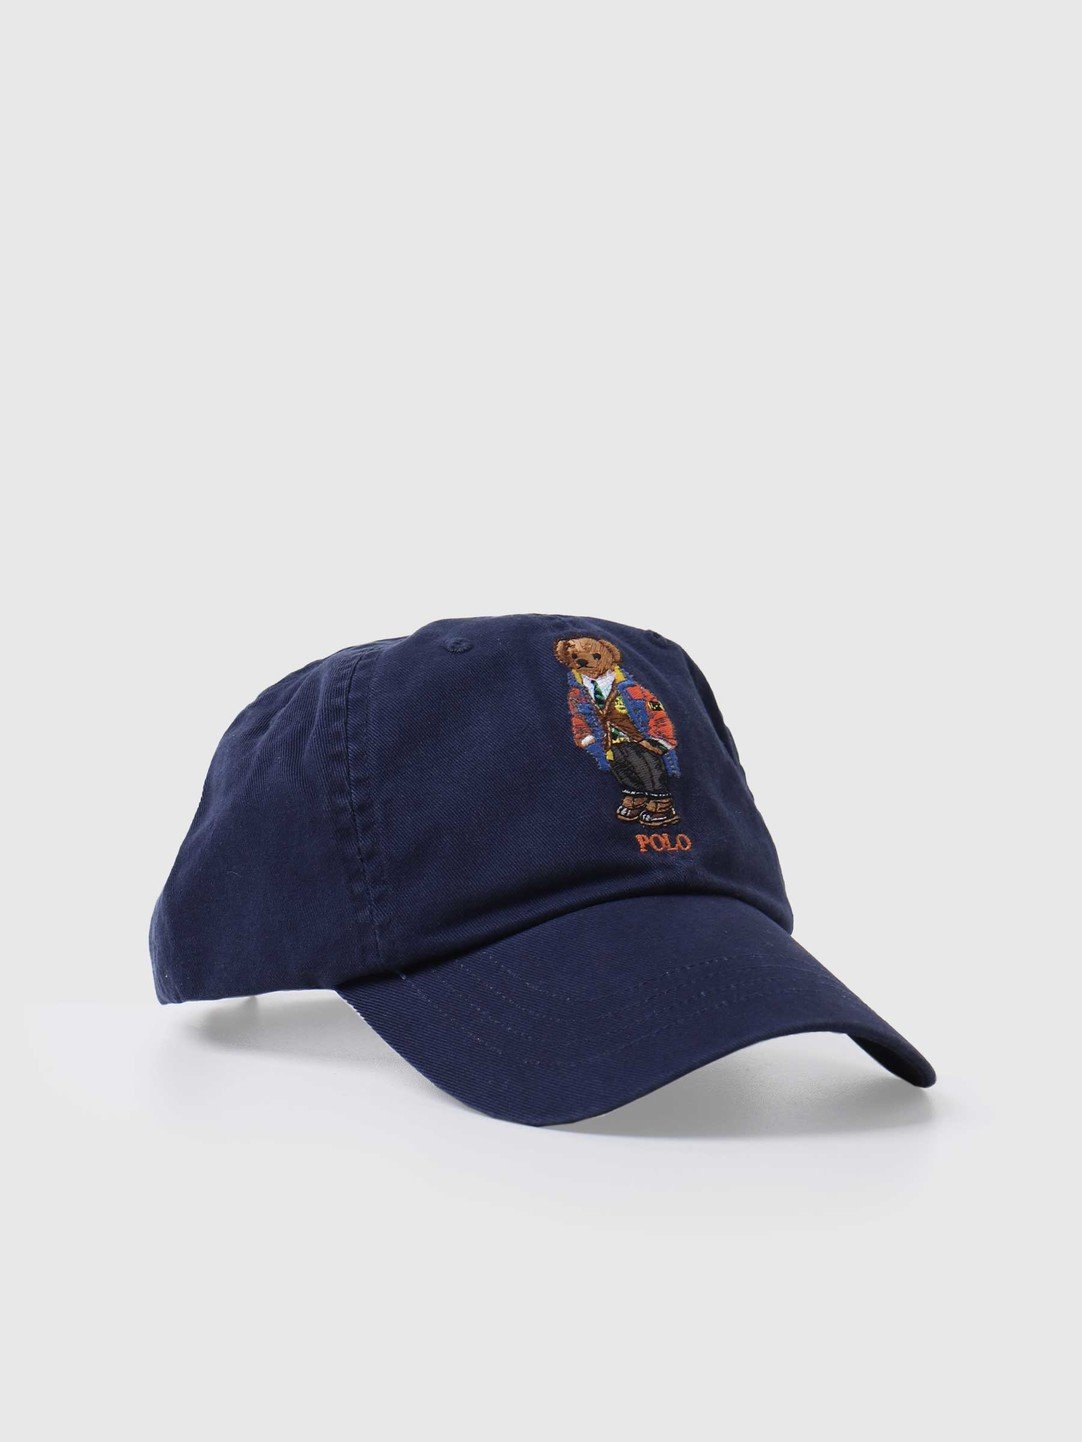 polo visor hat